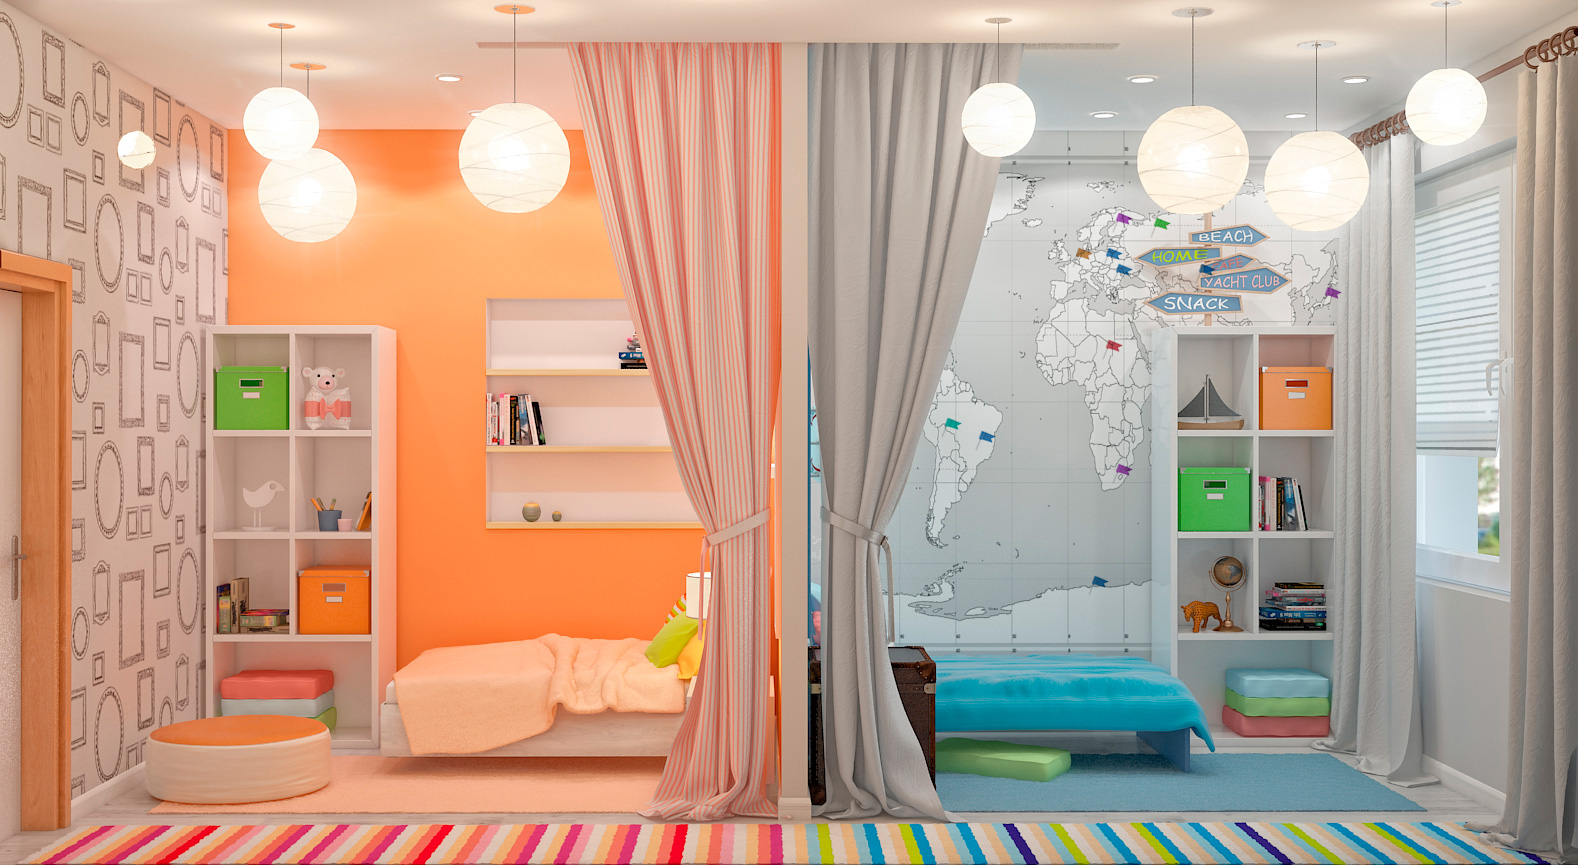 Дизайн детской комнаты - безопасность, функциональность и креативные решения